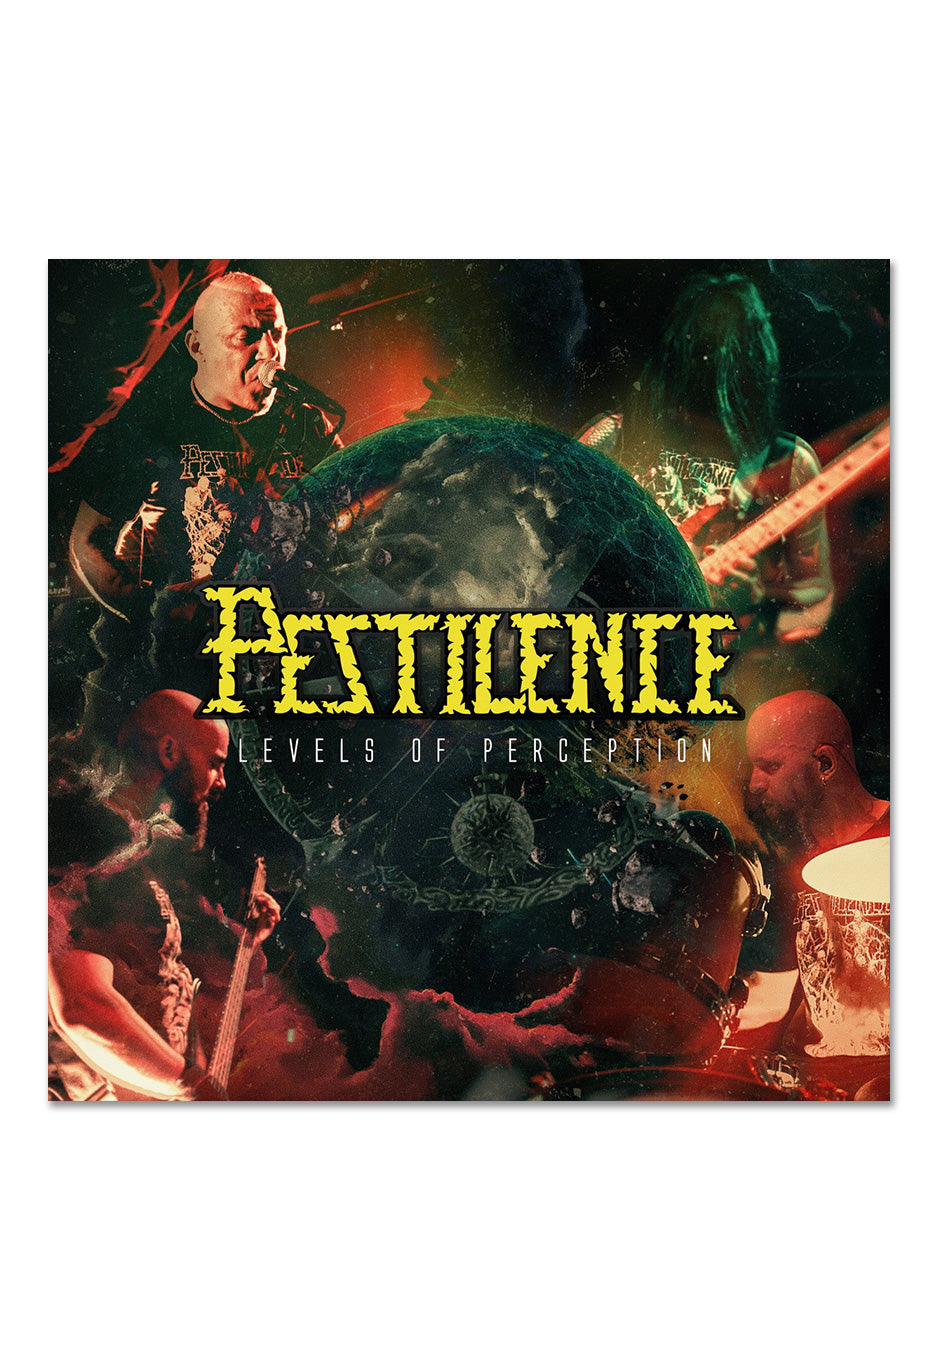 Pestilence - Levels Of Perception - Vinyl